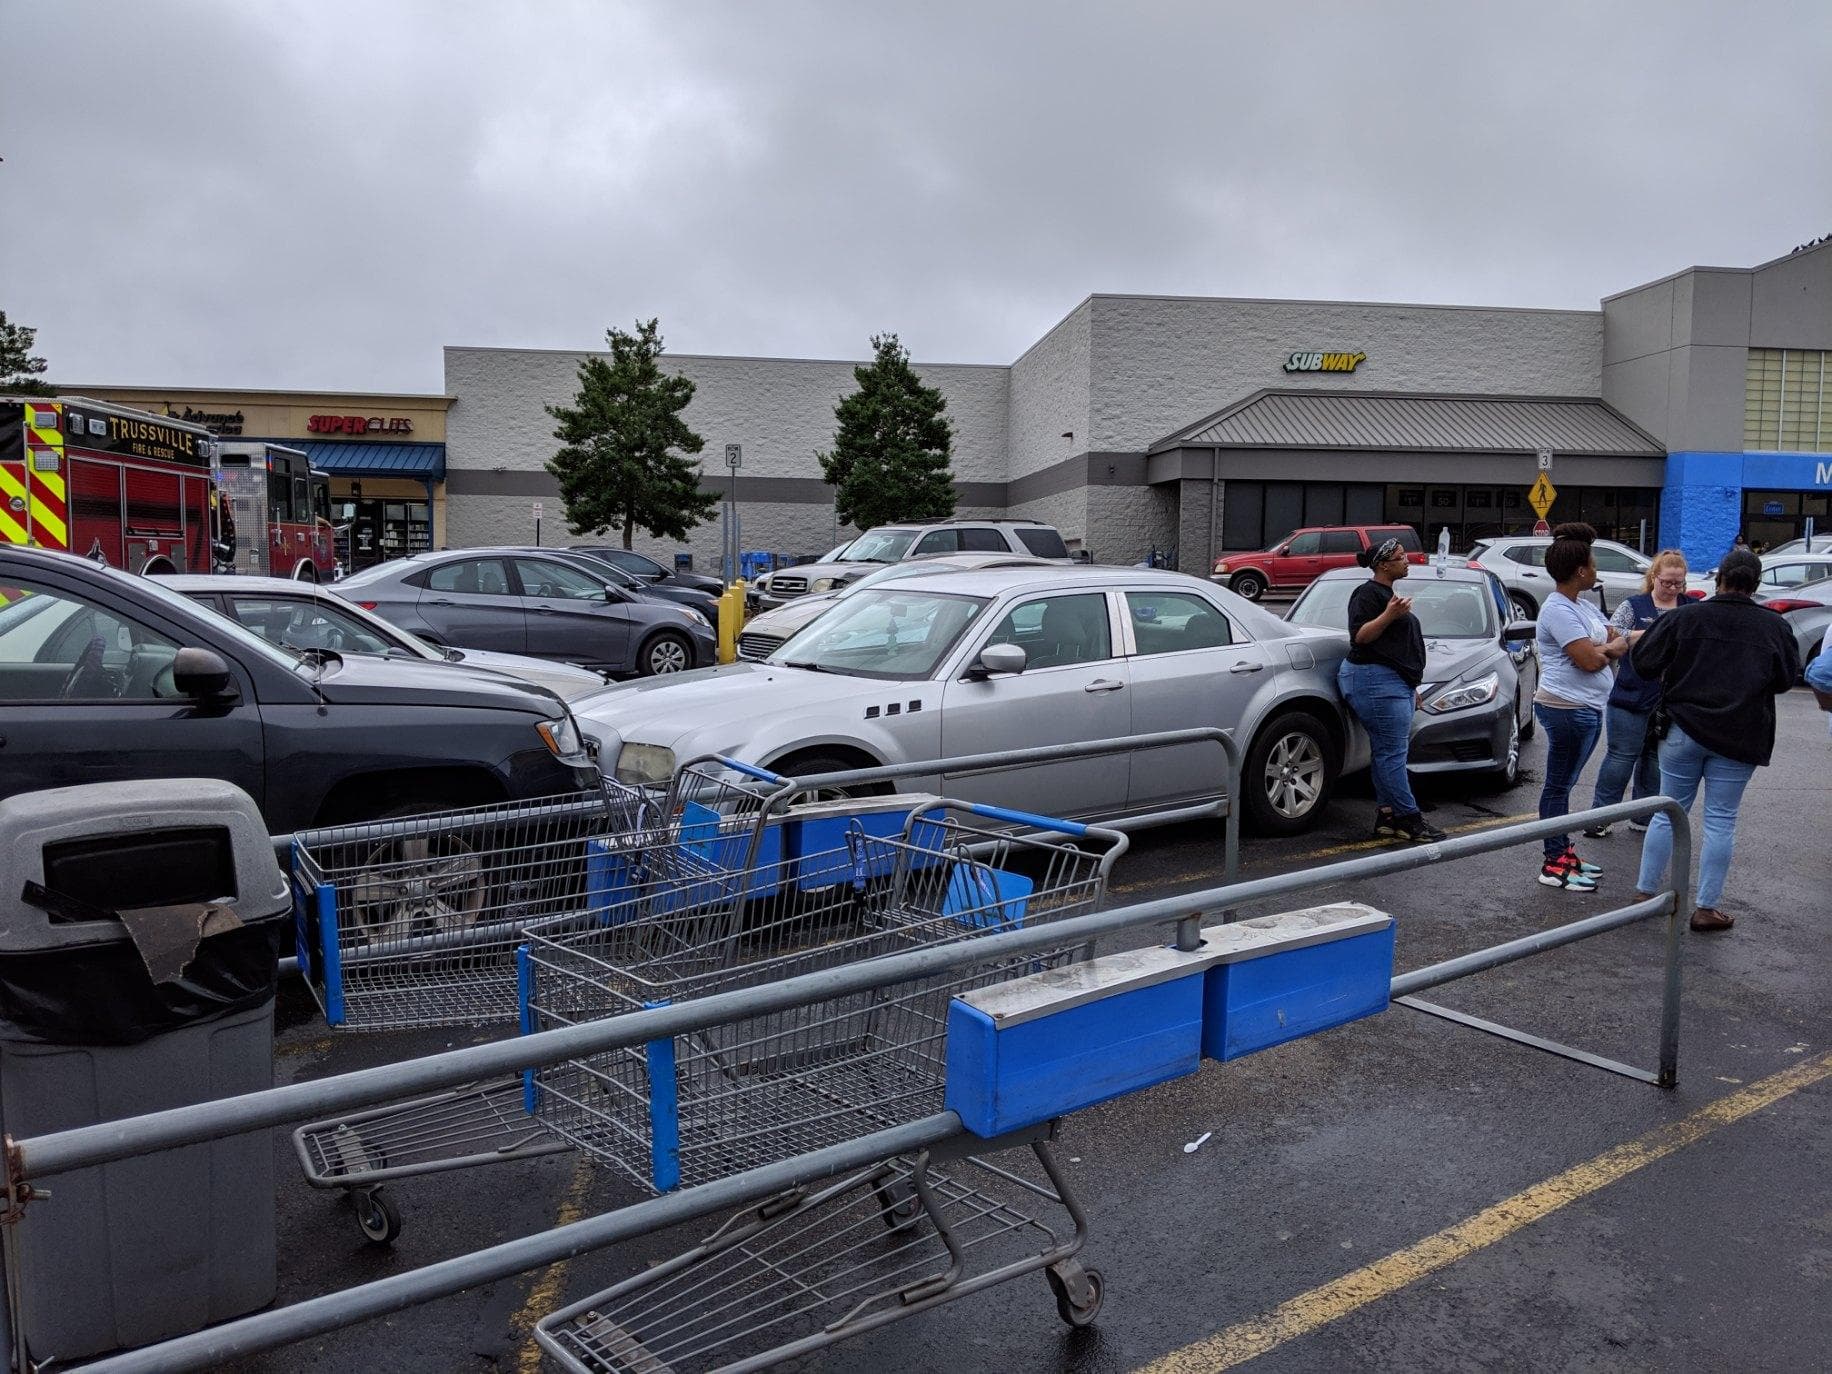 3-vehicle crash in Trussville Walmart parking lot